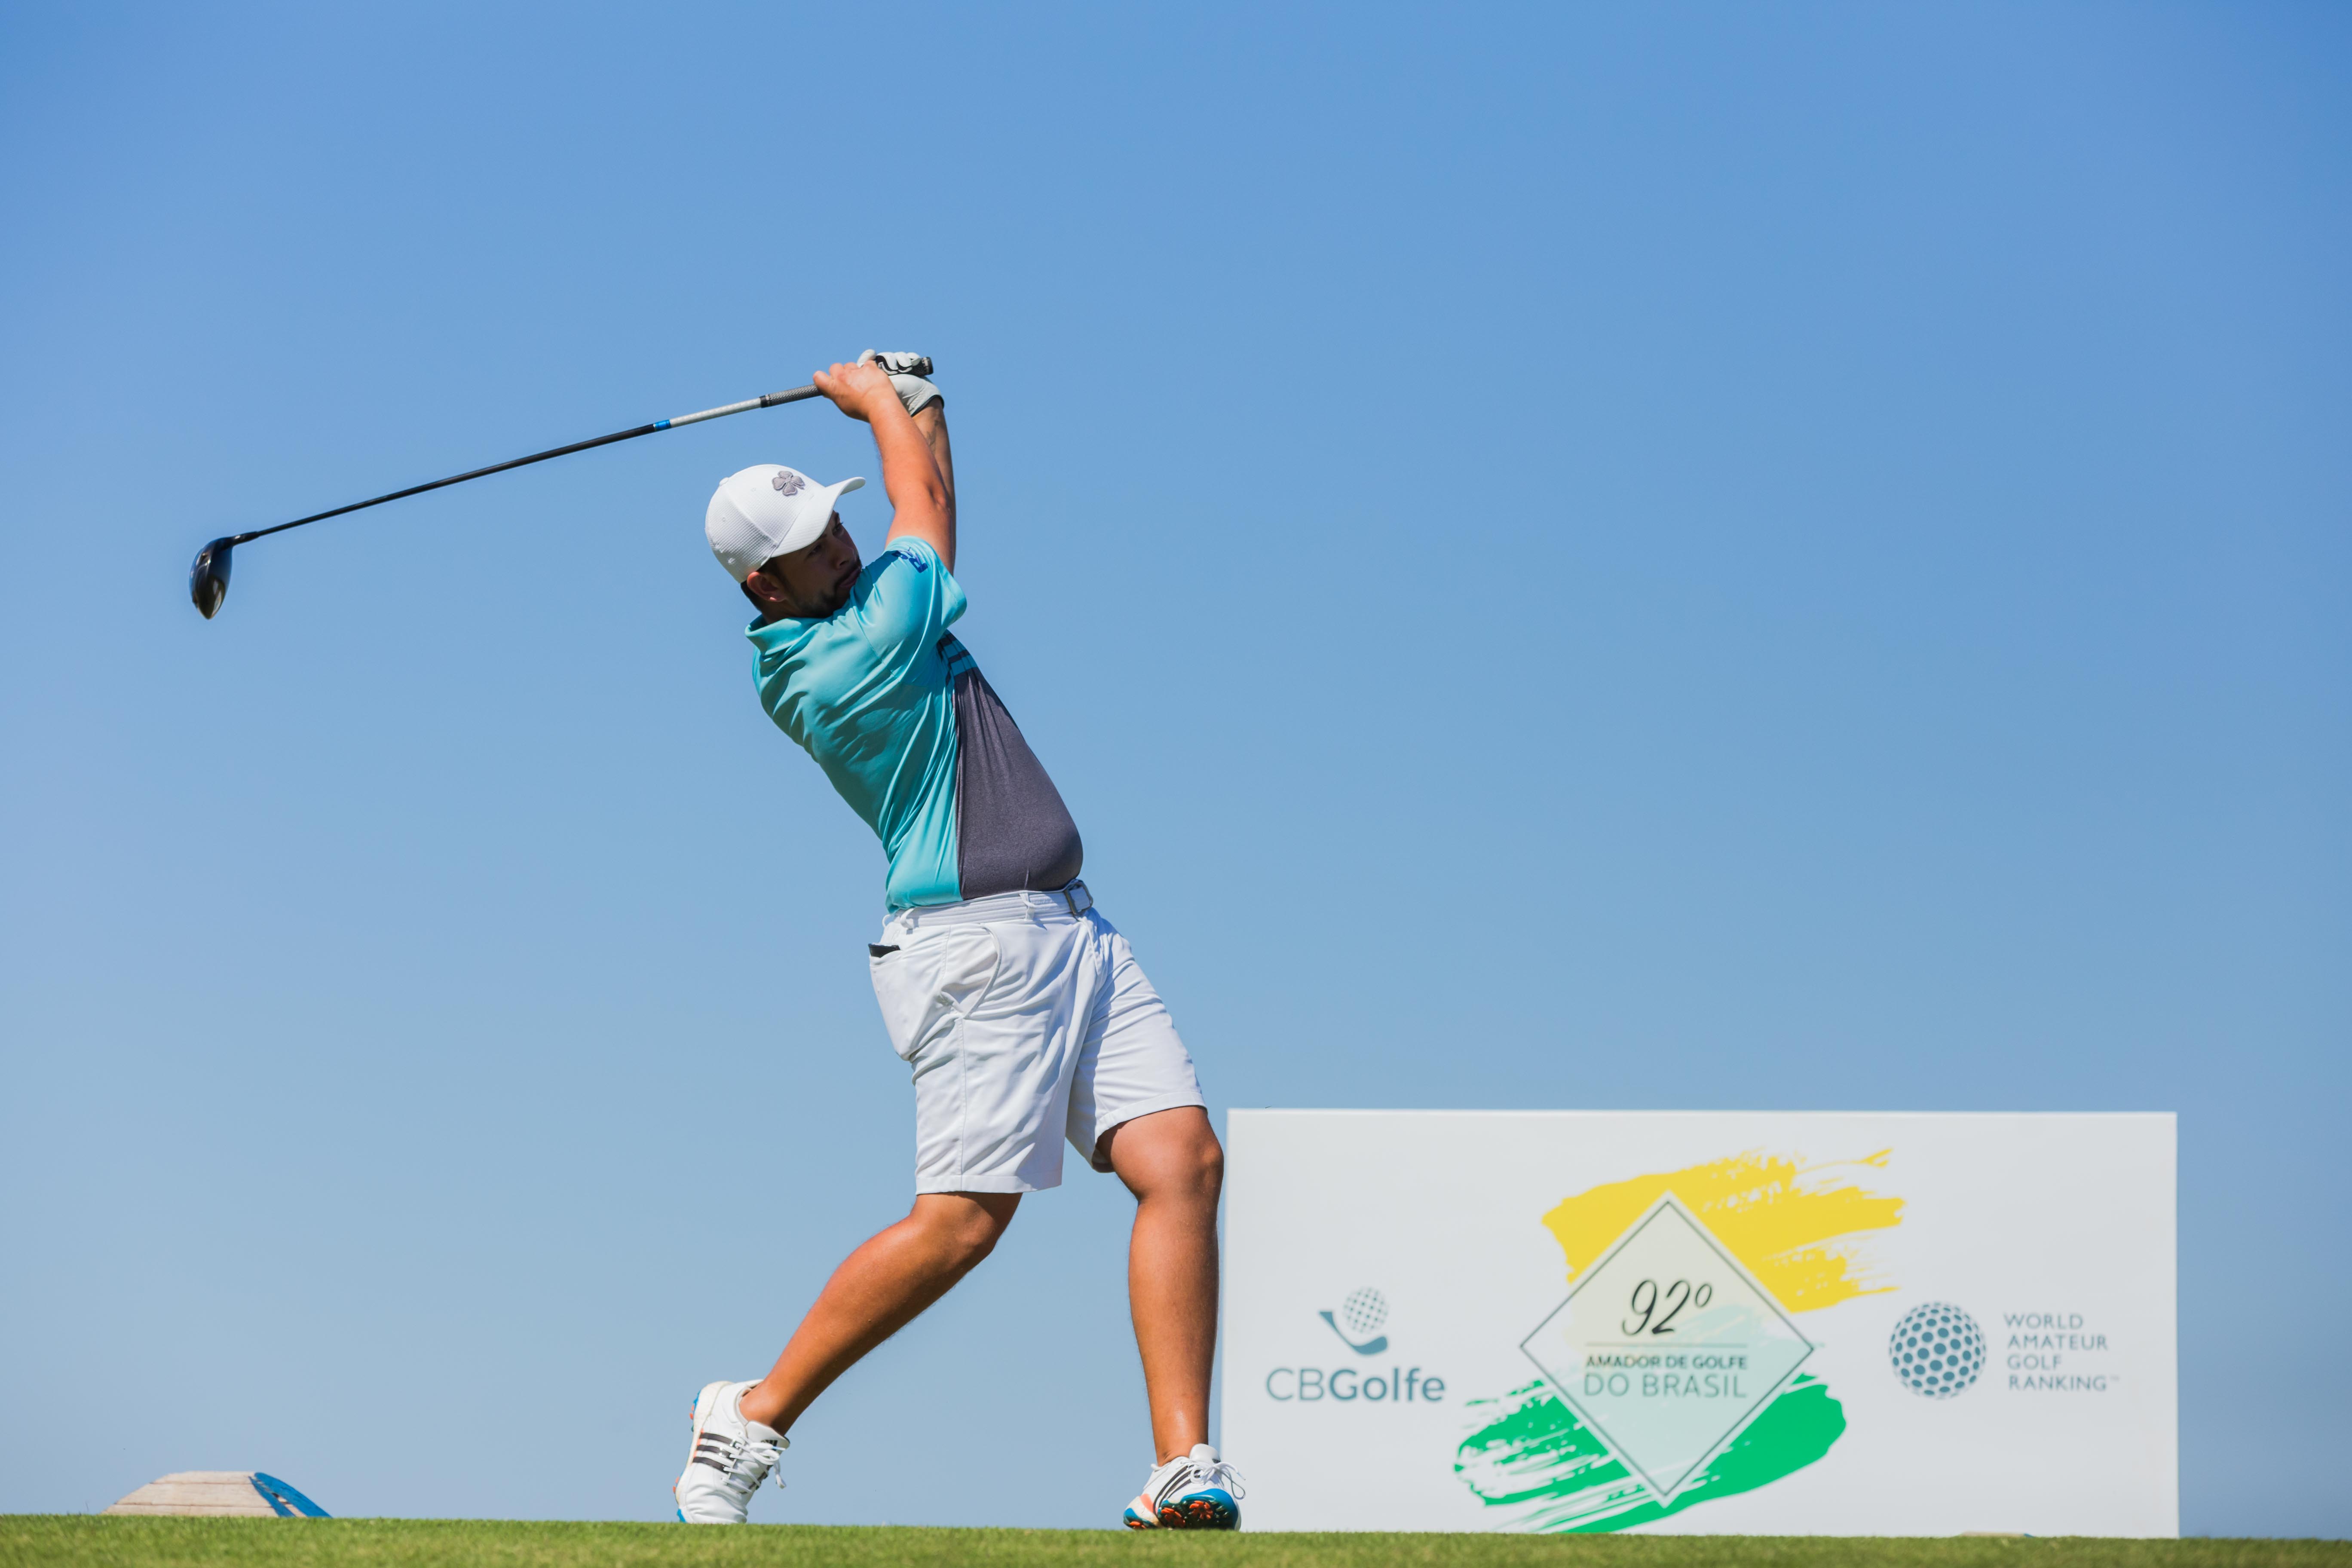 O Portal Brasileiro do Golfe > Tudo sobre golfe: Notícias, Fotos, Vídeos,  Equipamentos e mais